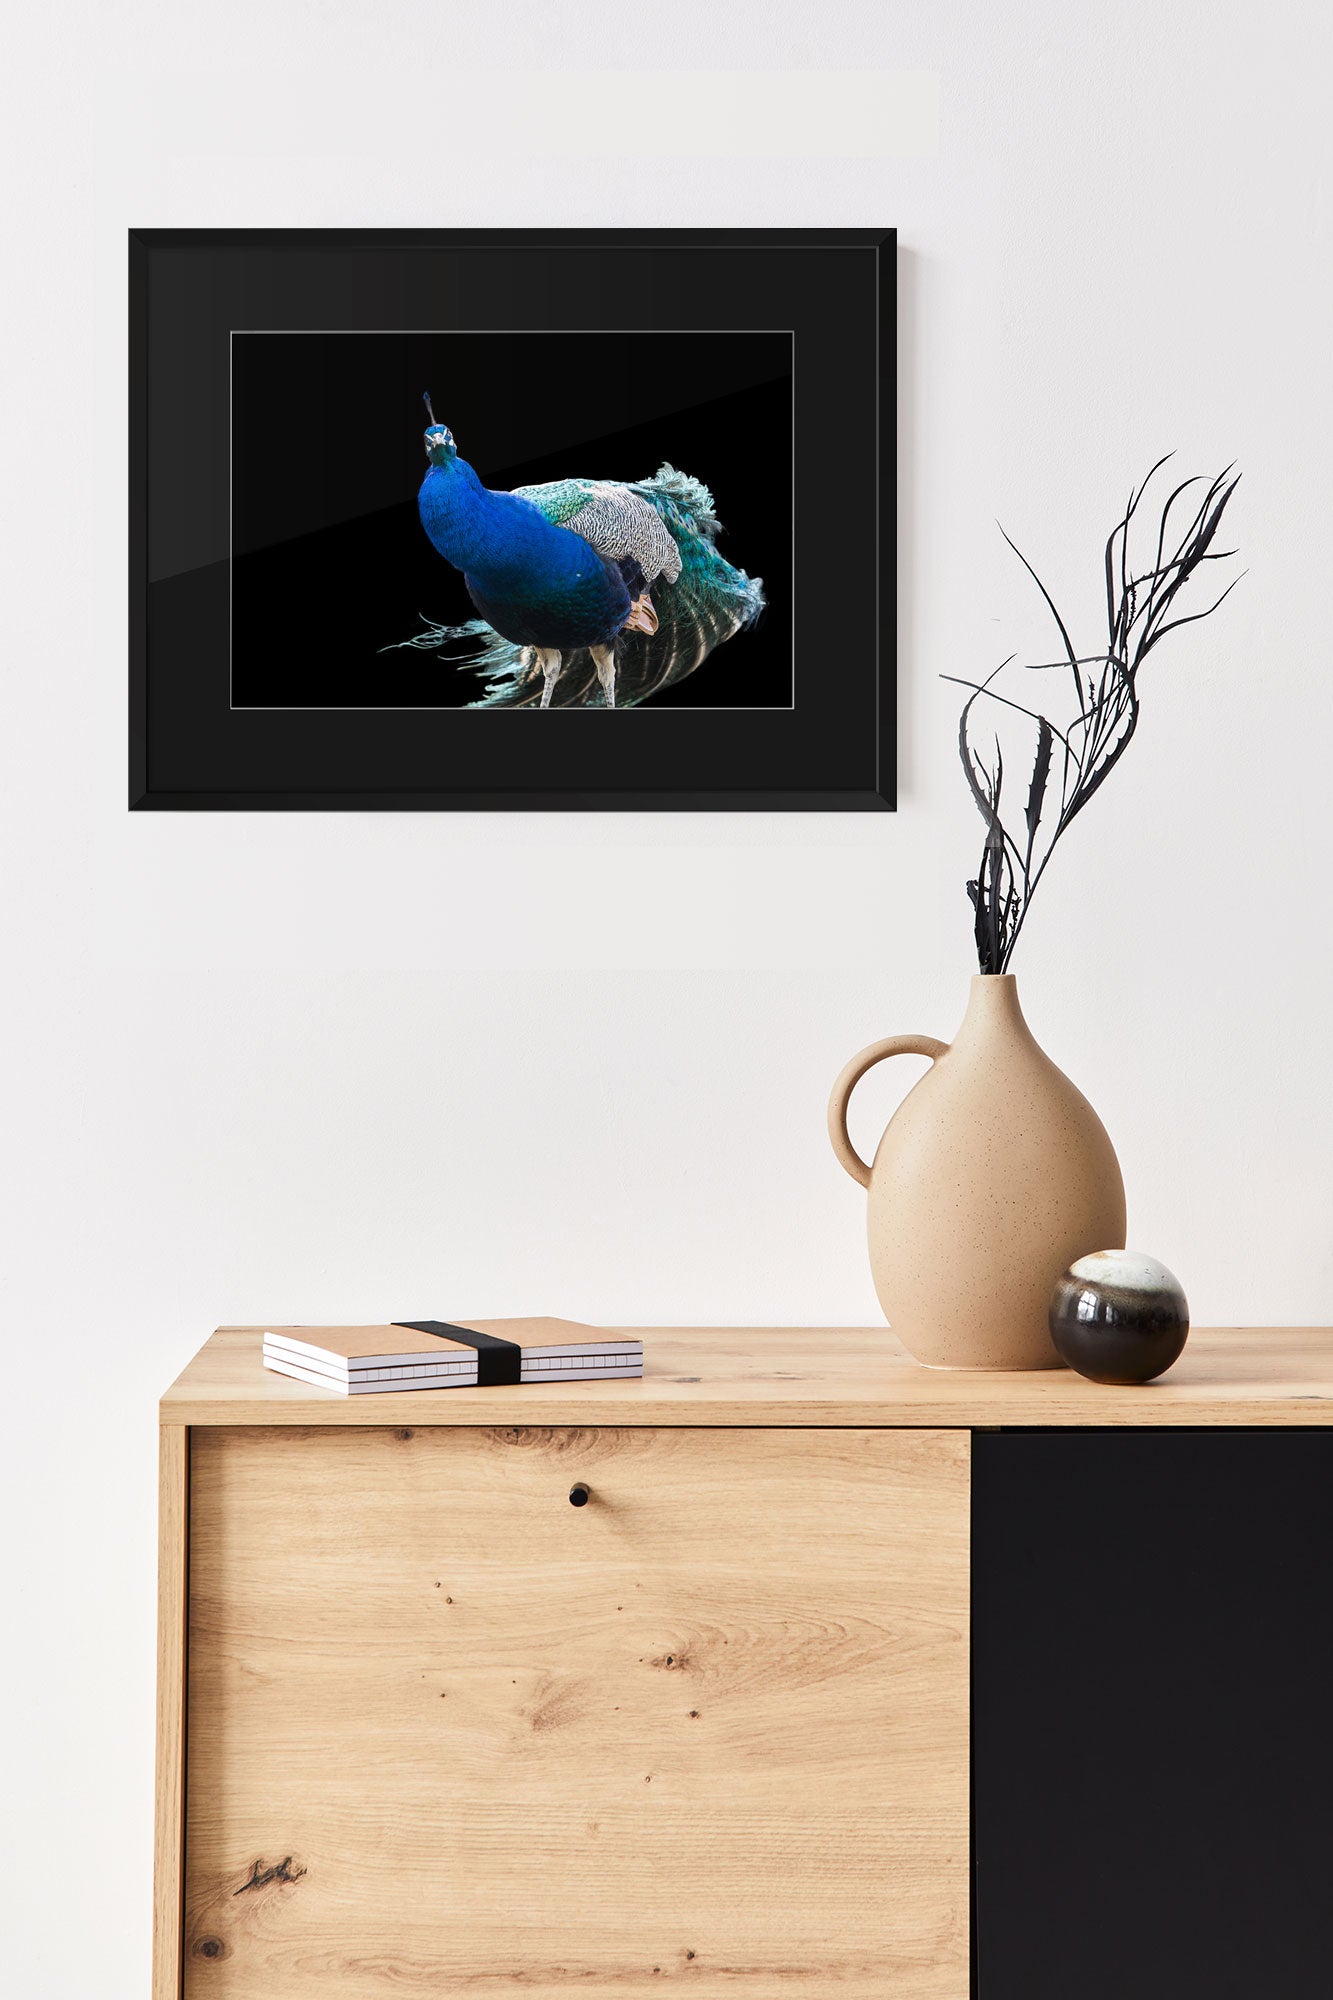 Fotografie Blauer Pfau auf schwarzem Hintergrund mit Passepartout - beispiel an der Wand